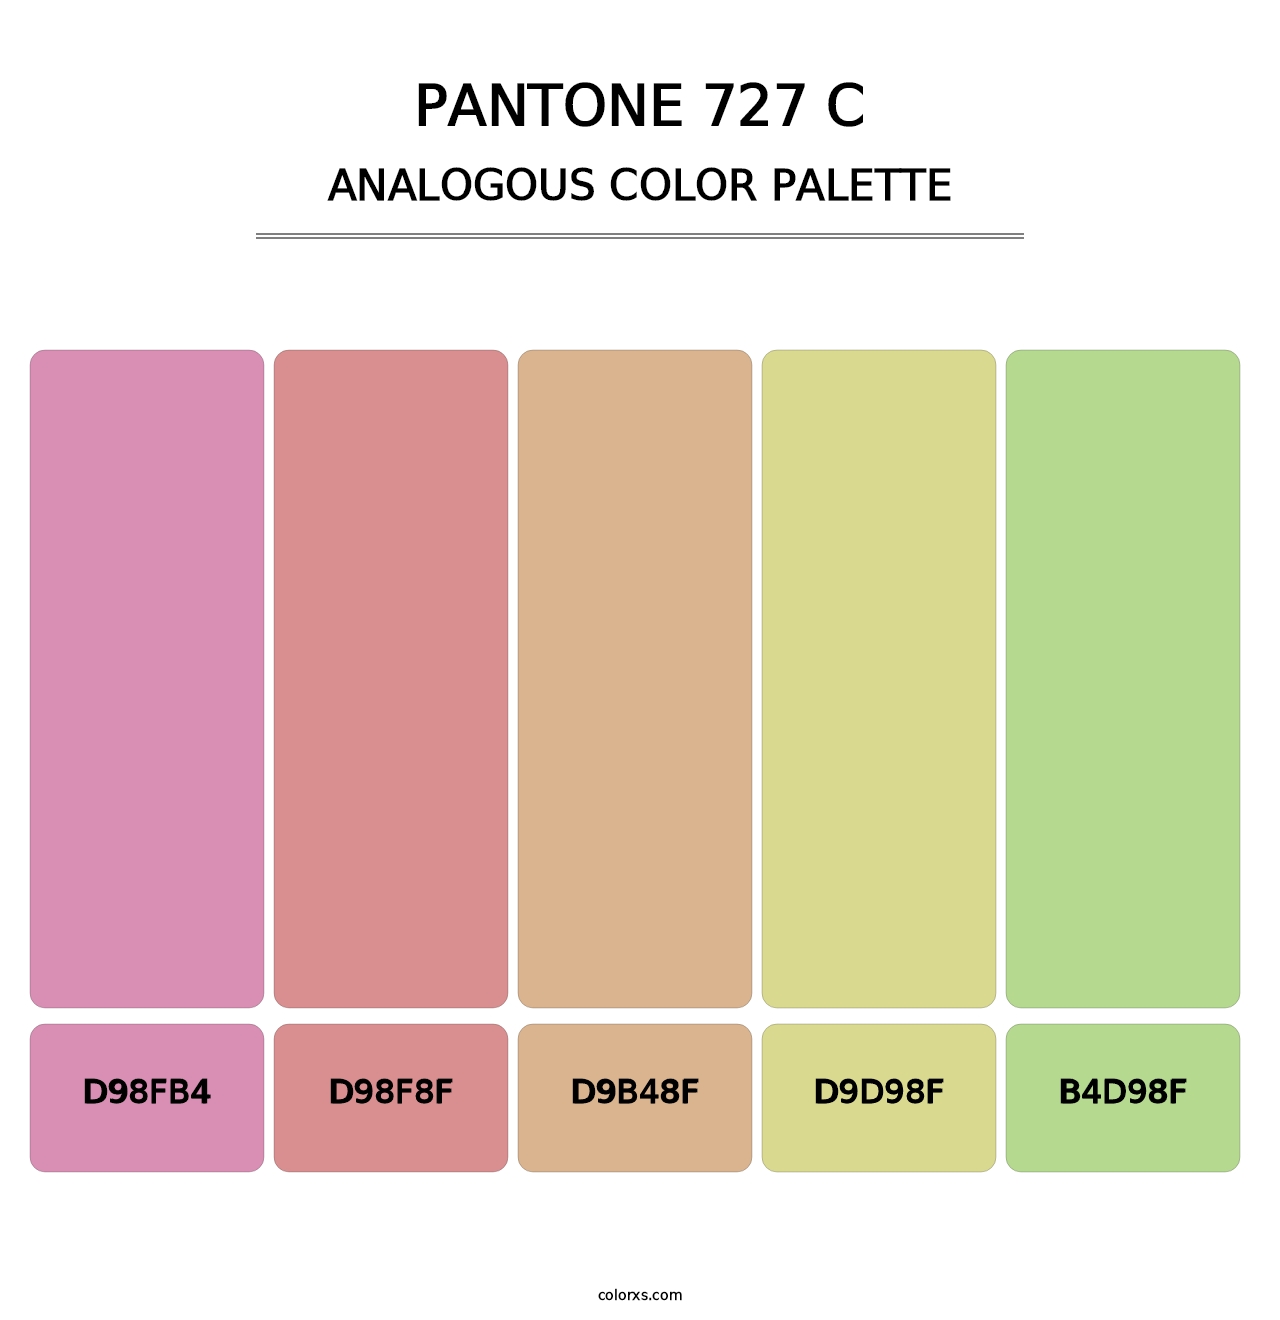 PANTONE 727 C - Analogous Color Palette